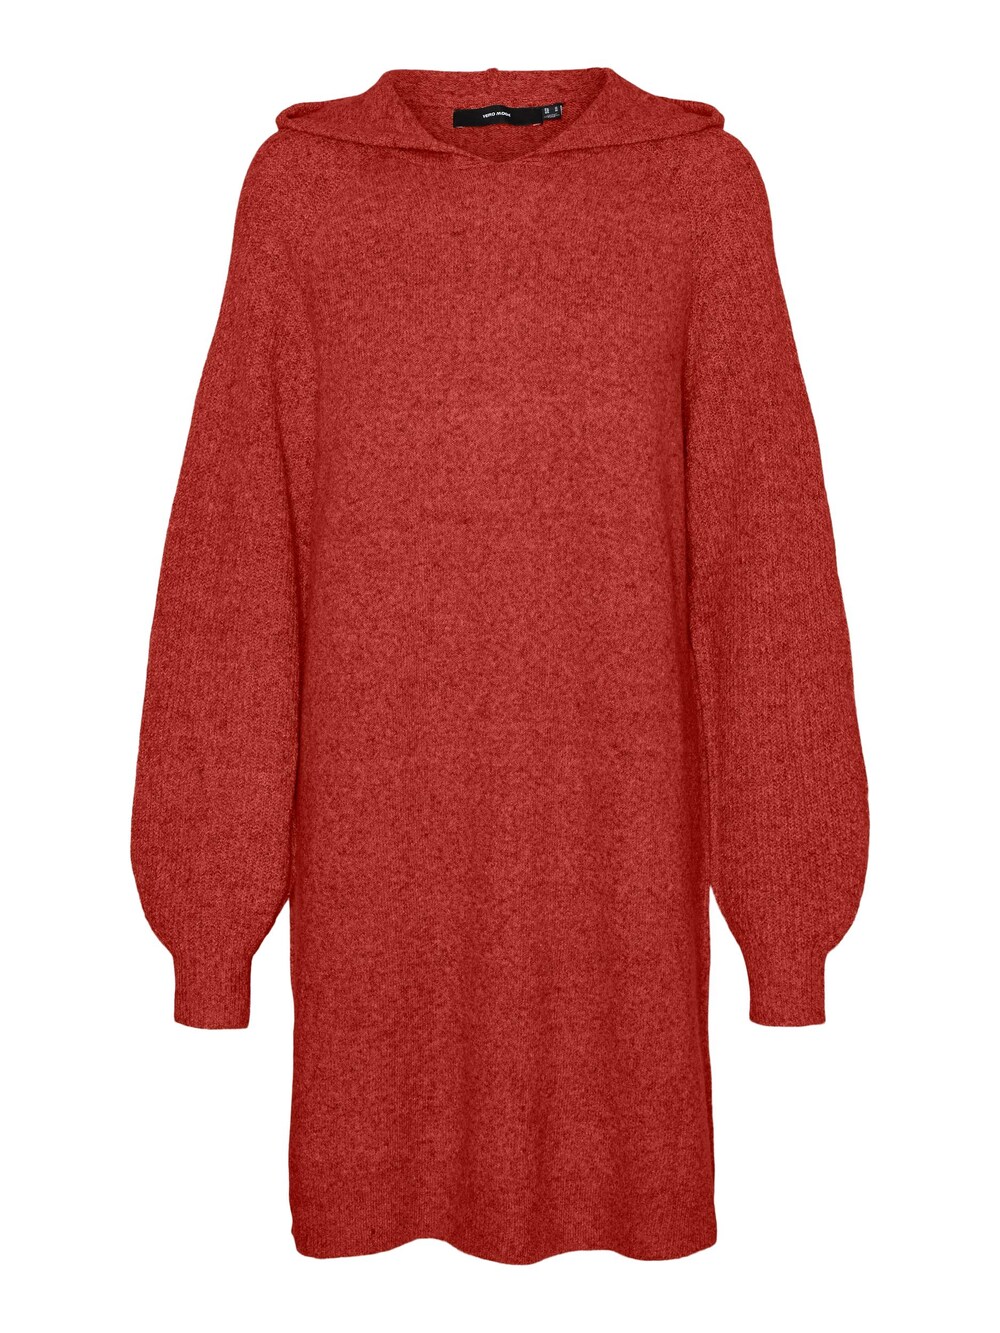 Вязанное платье Vero Moda DOFFY, красный